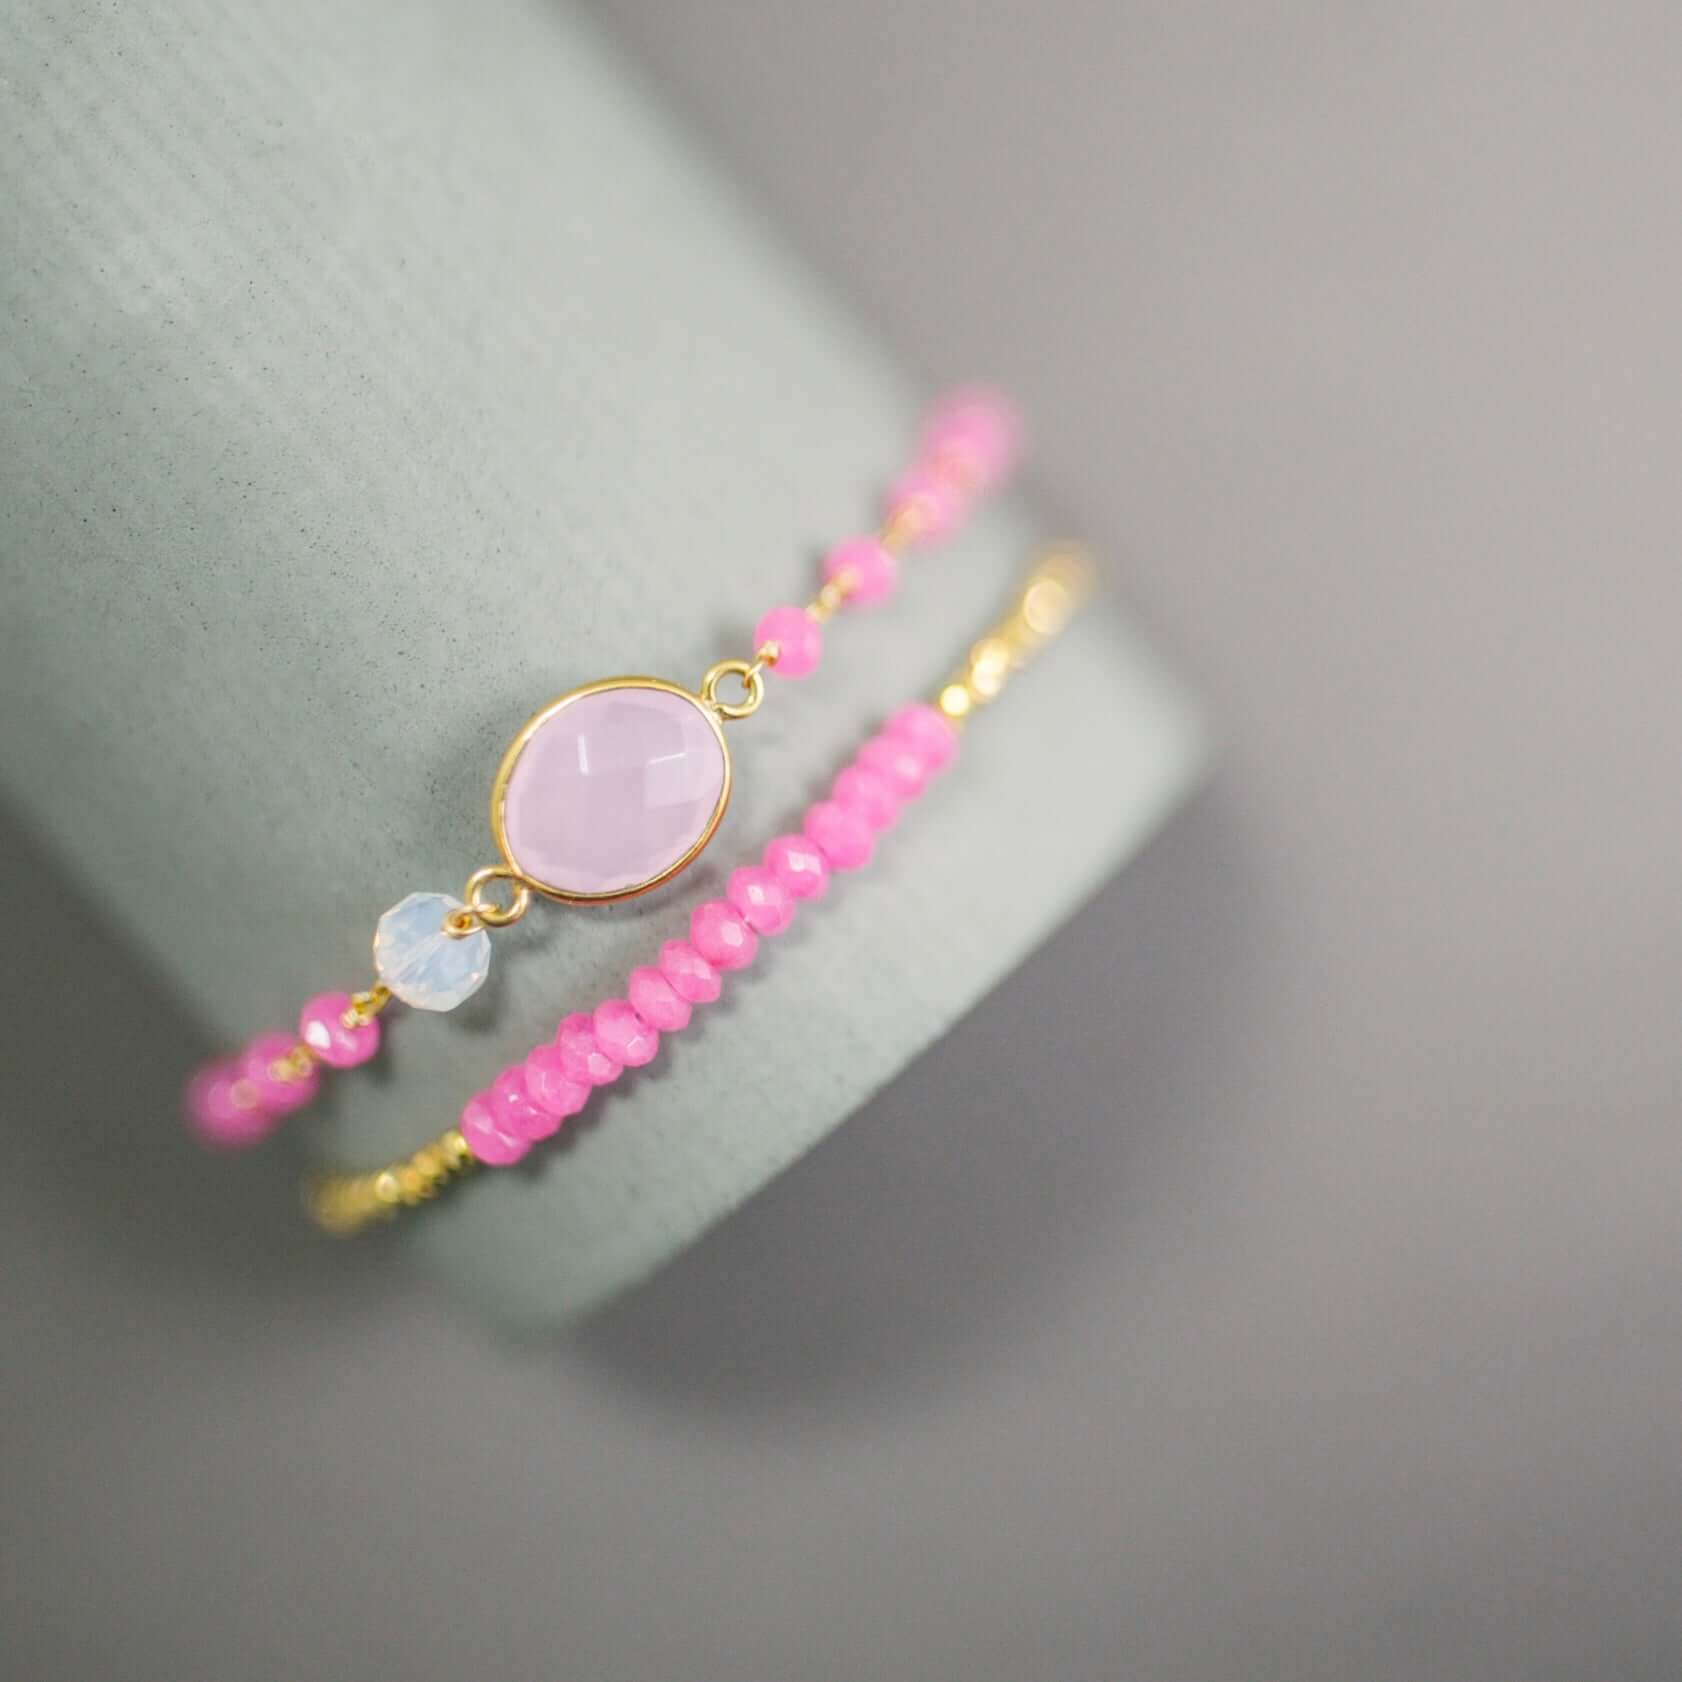 Adjustable Slider Bracelet Set with Rose quartz and  hot pink quartz Gems